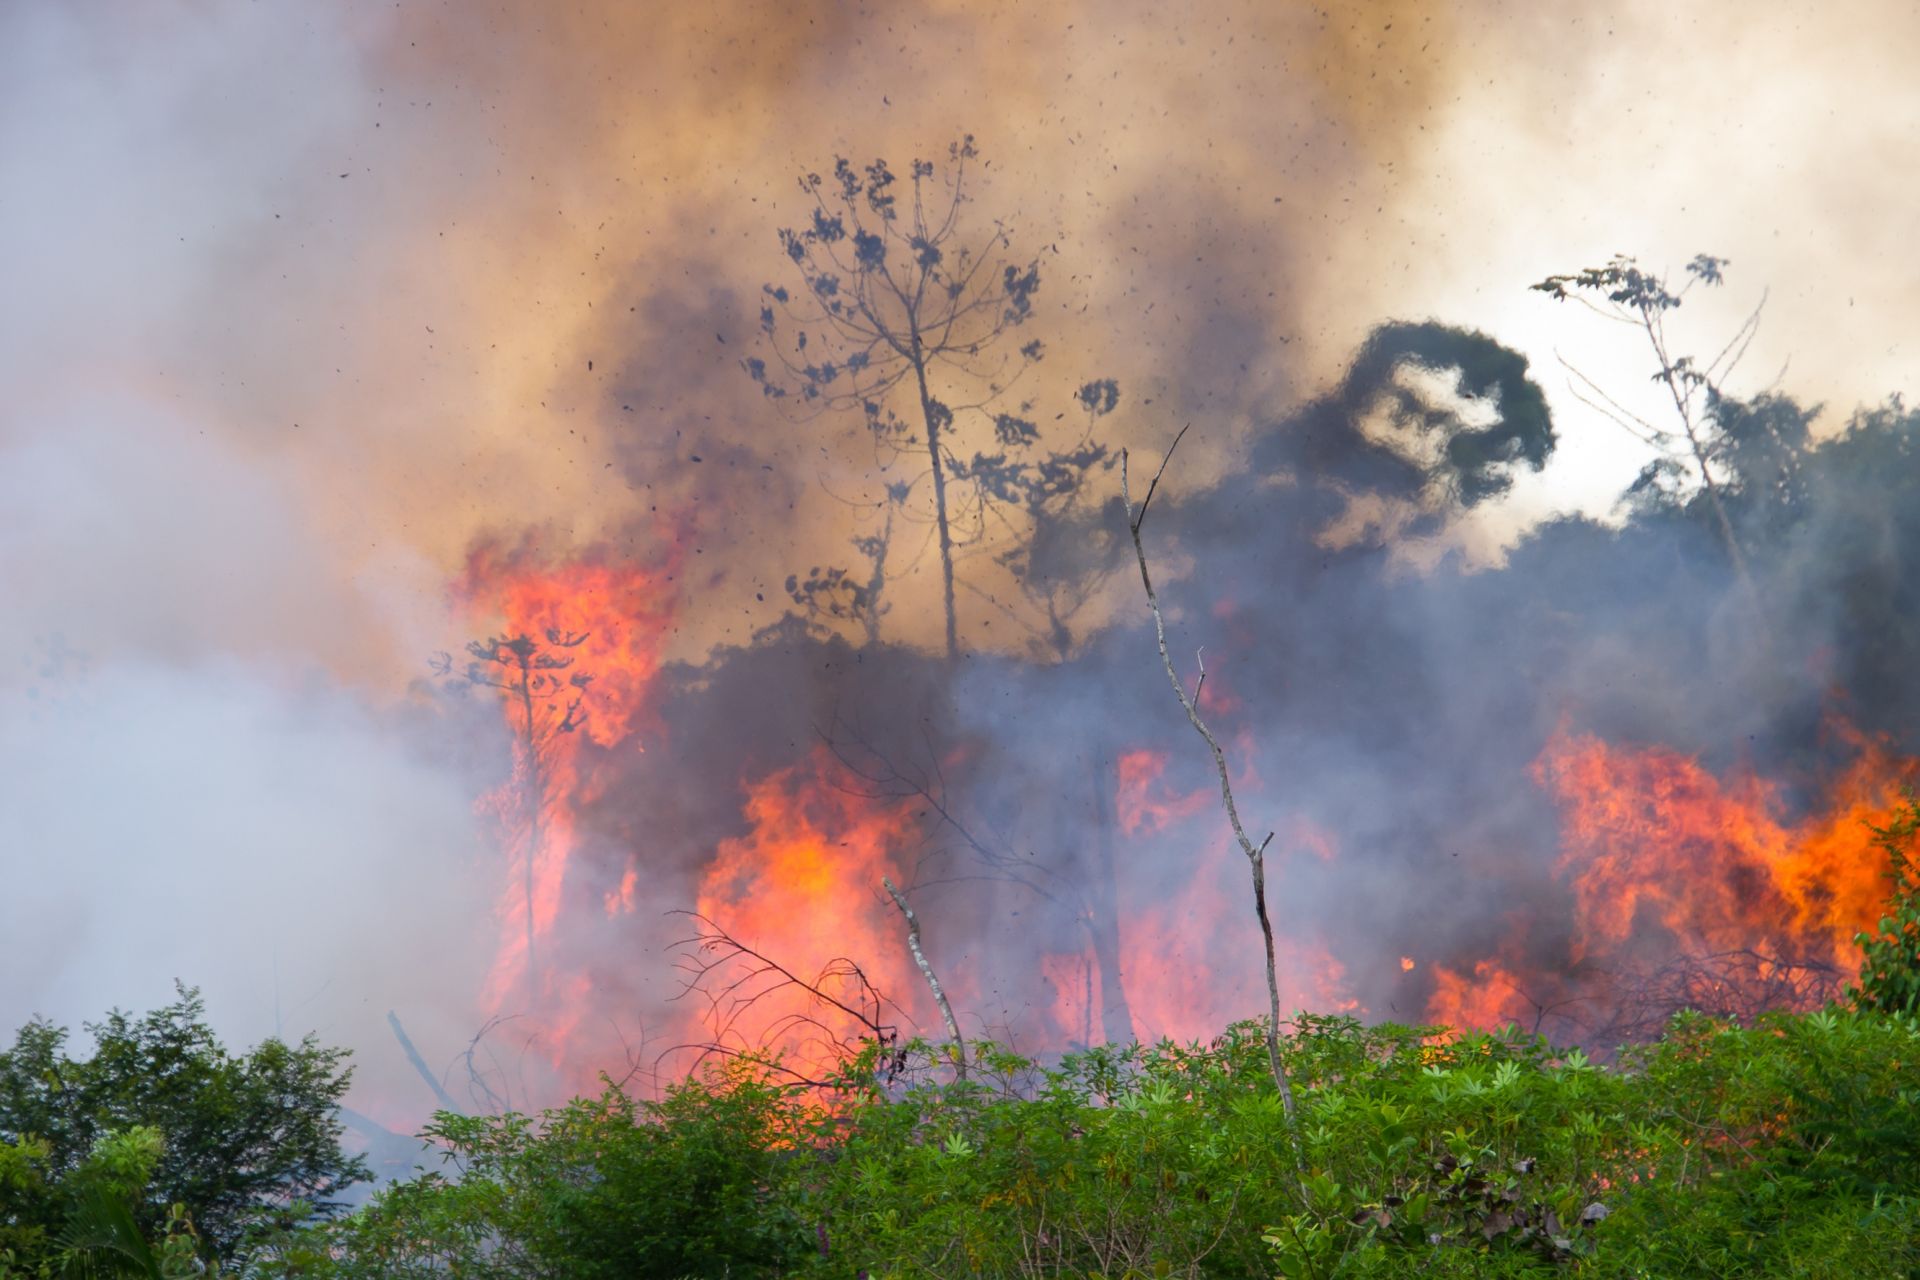 Спътниково проучване: горските пожари в умерения пояс отделят рекордни количества въглерод